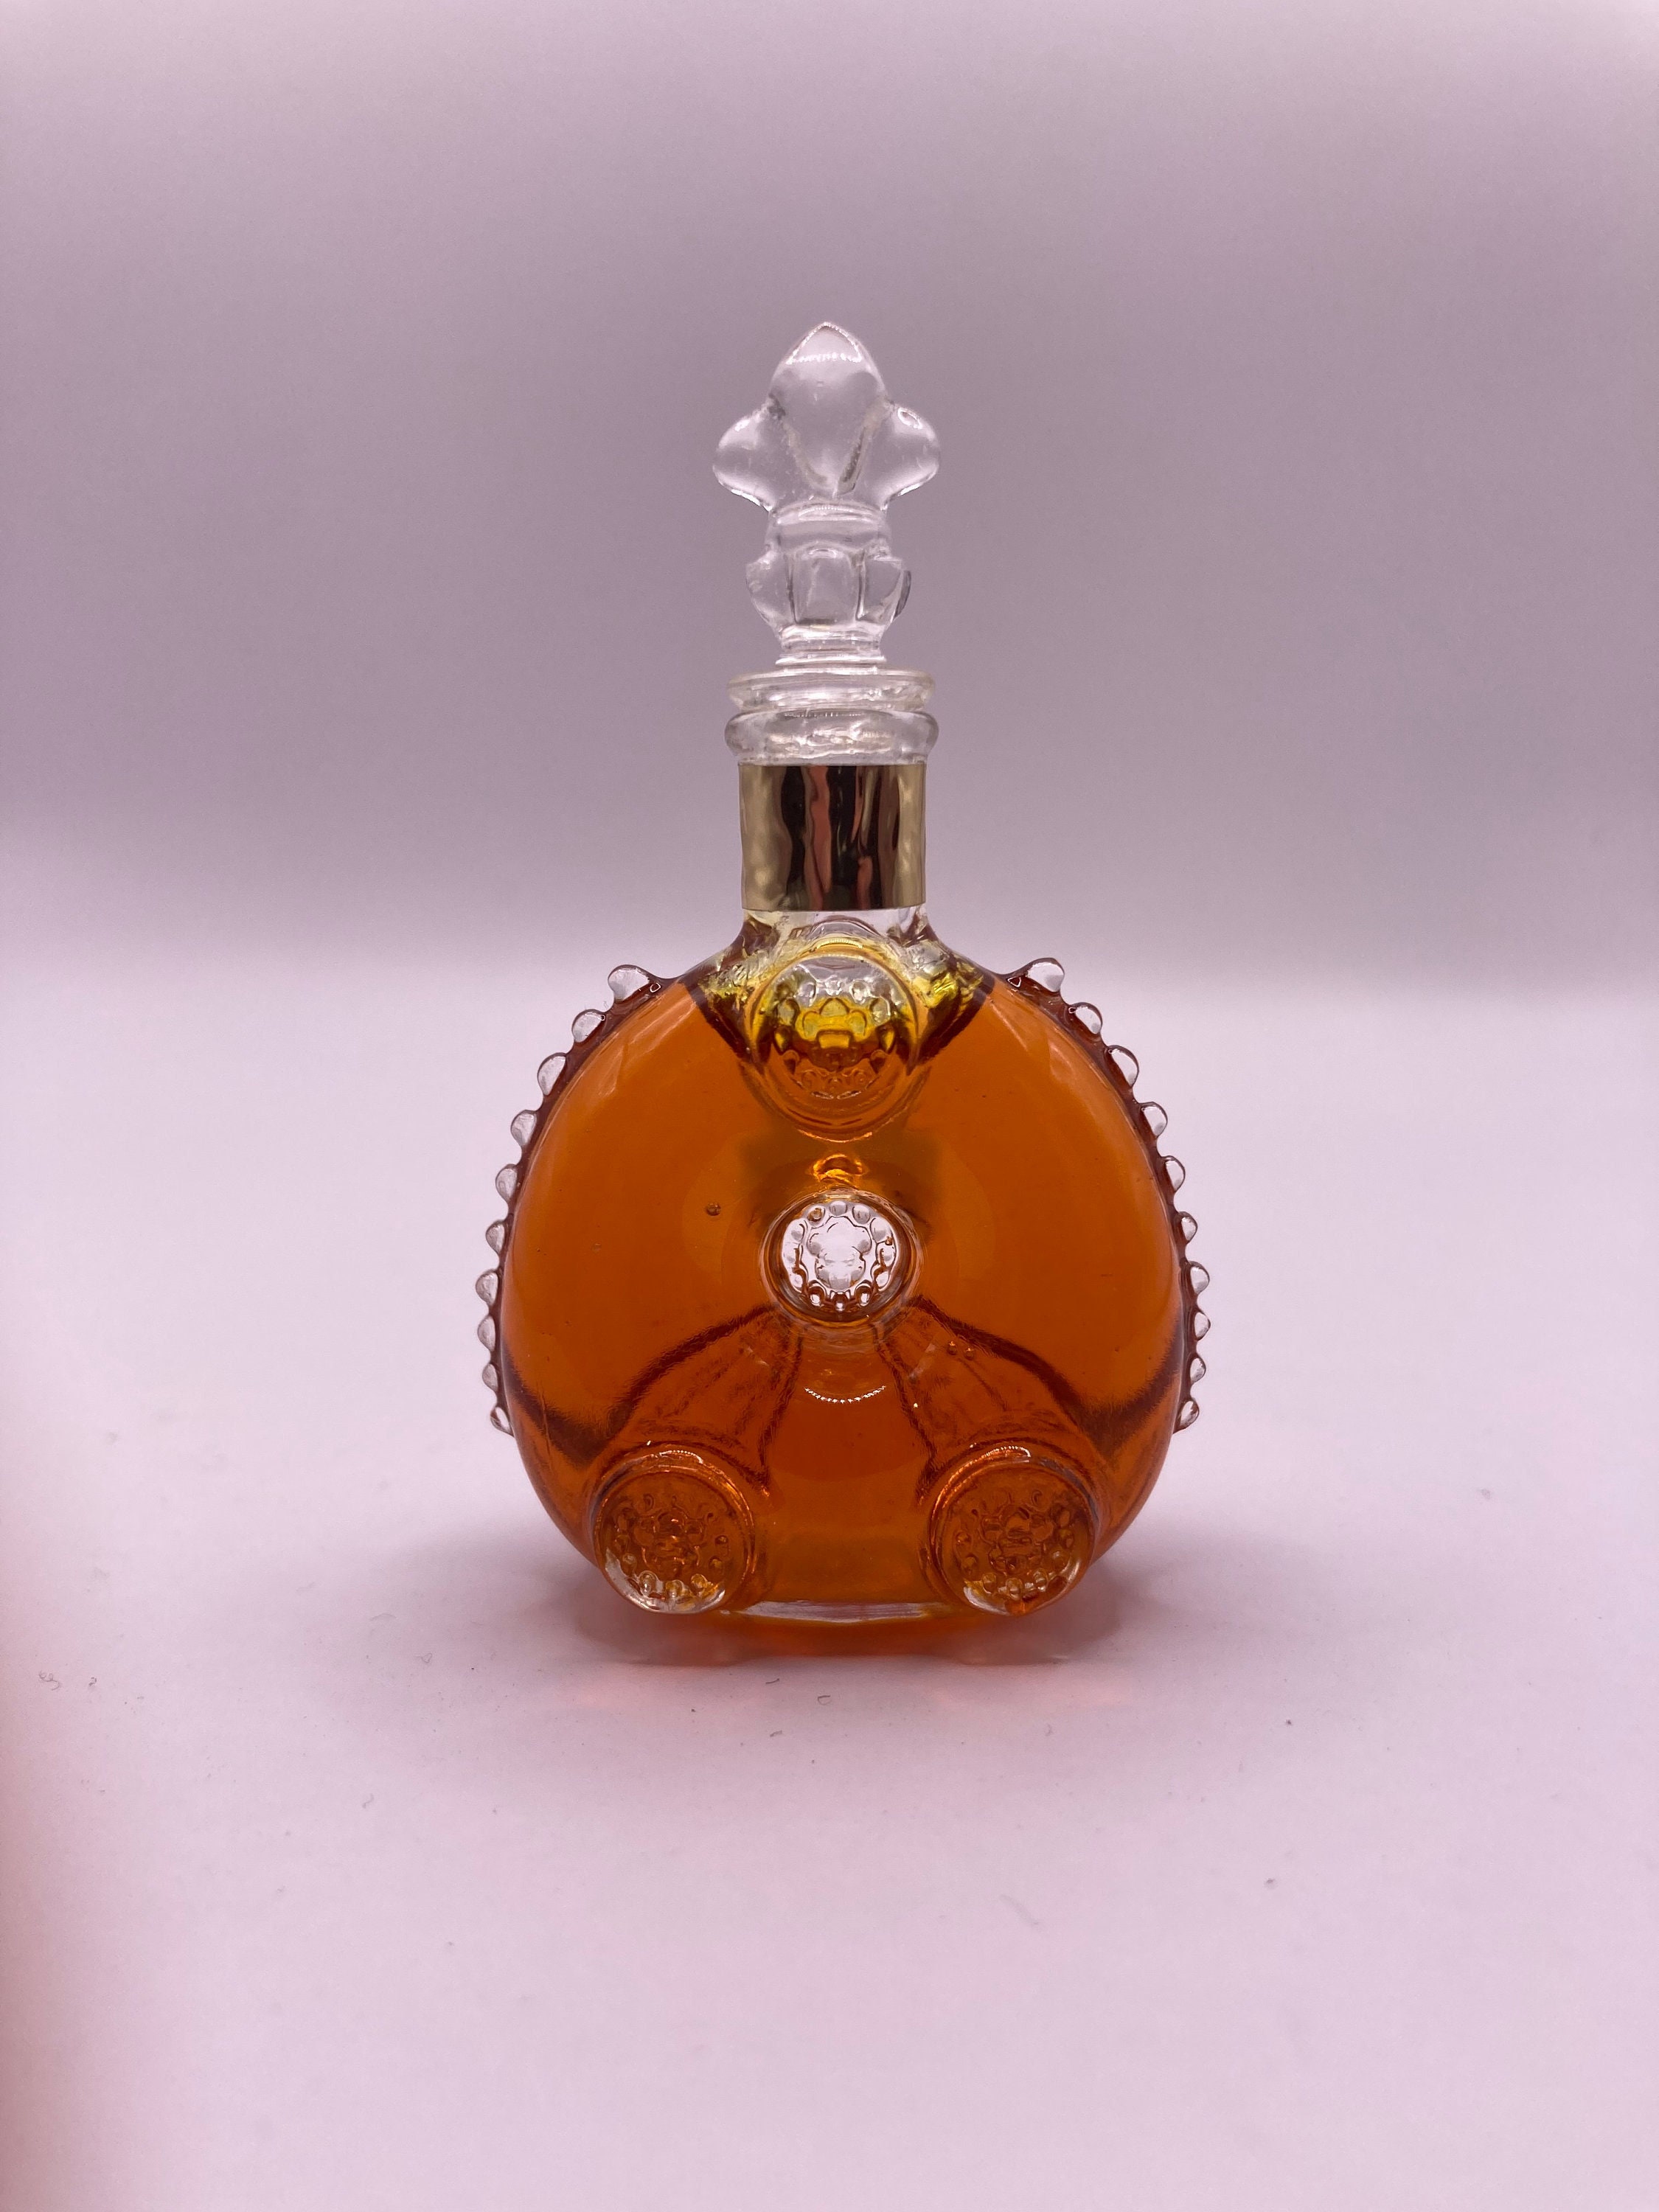 Louis Xiii Cognac Bottle 